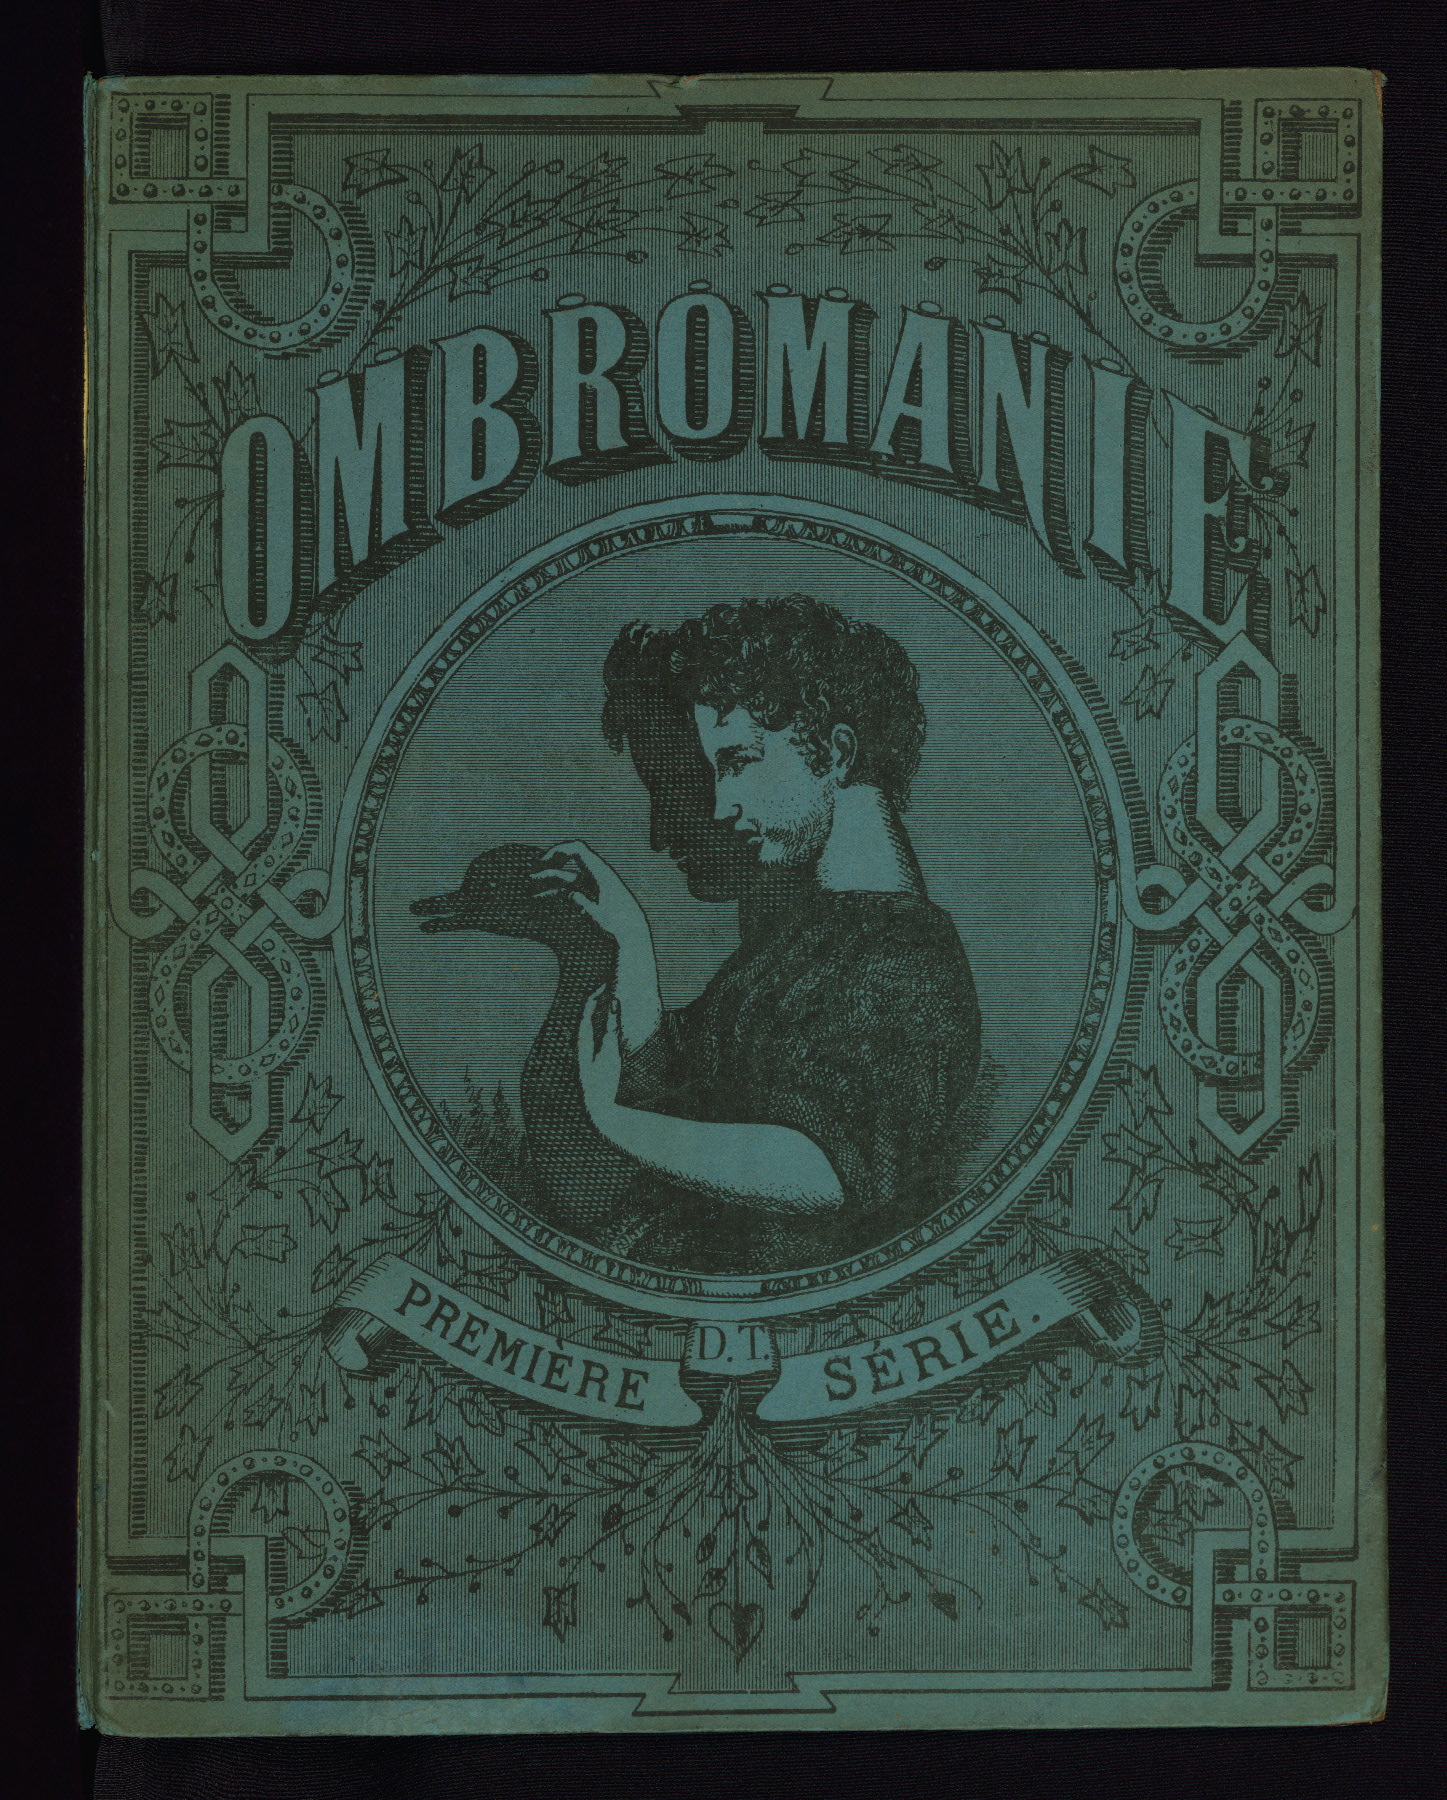 Un livre d’ombromanie en 1860